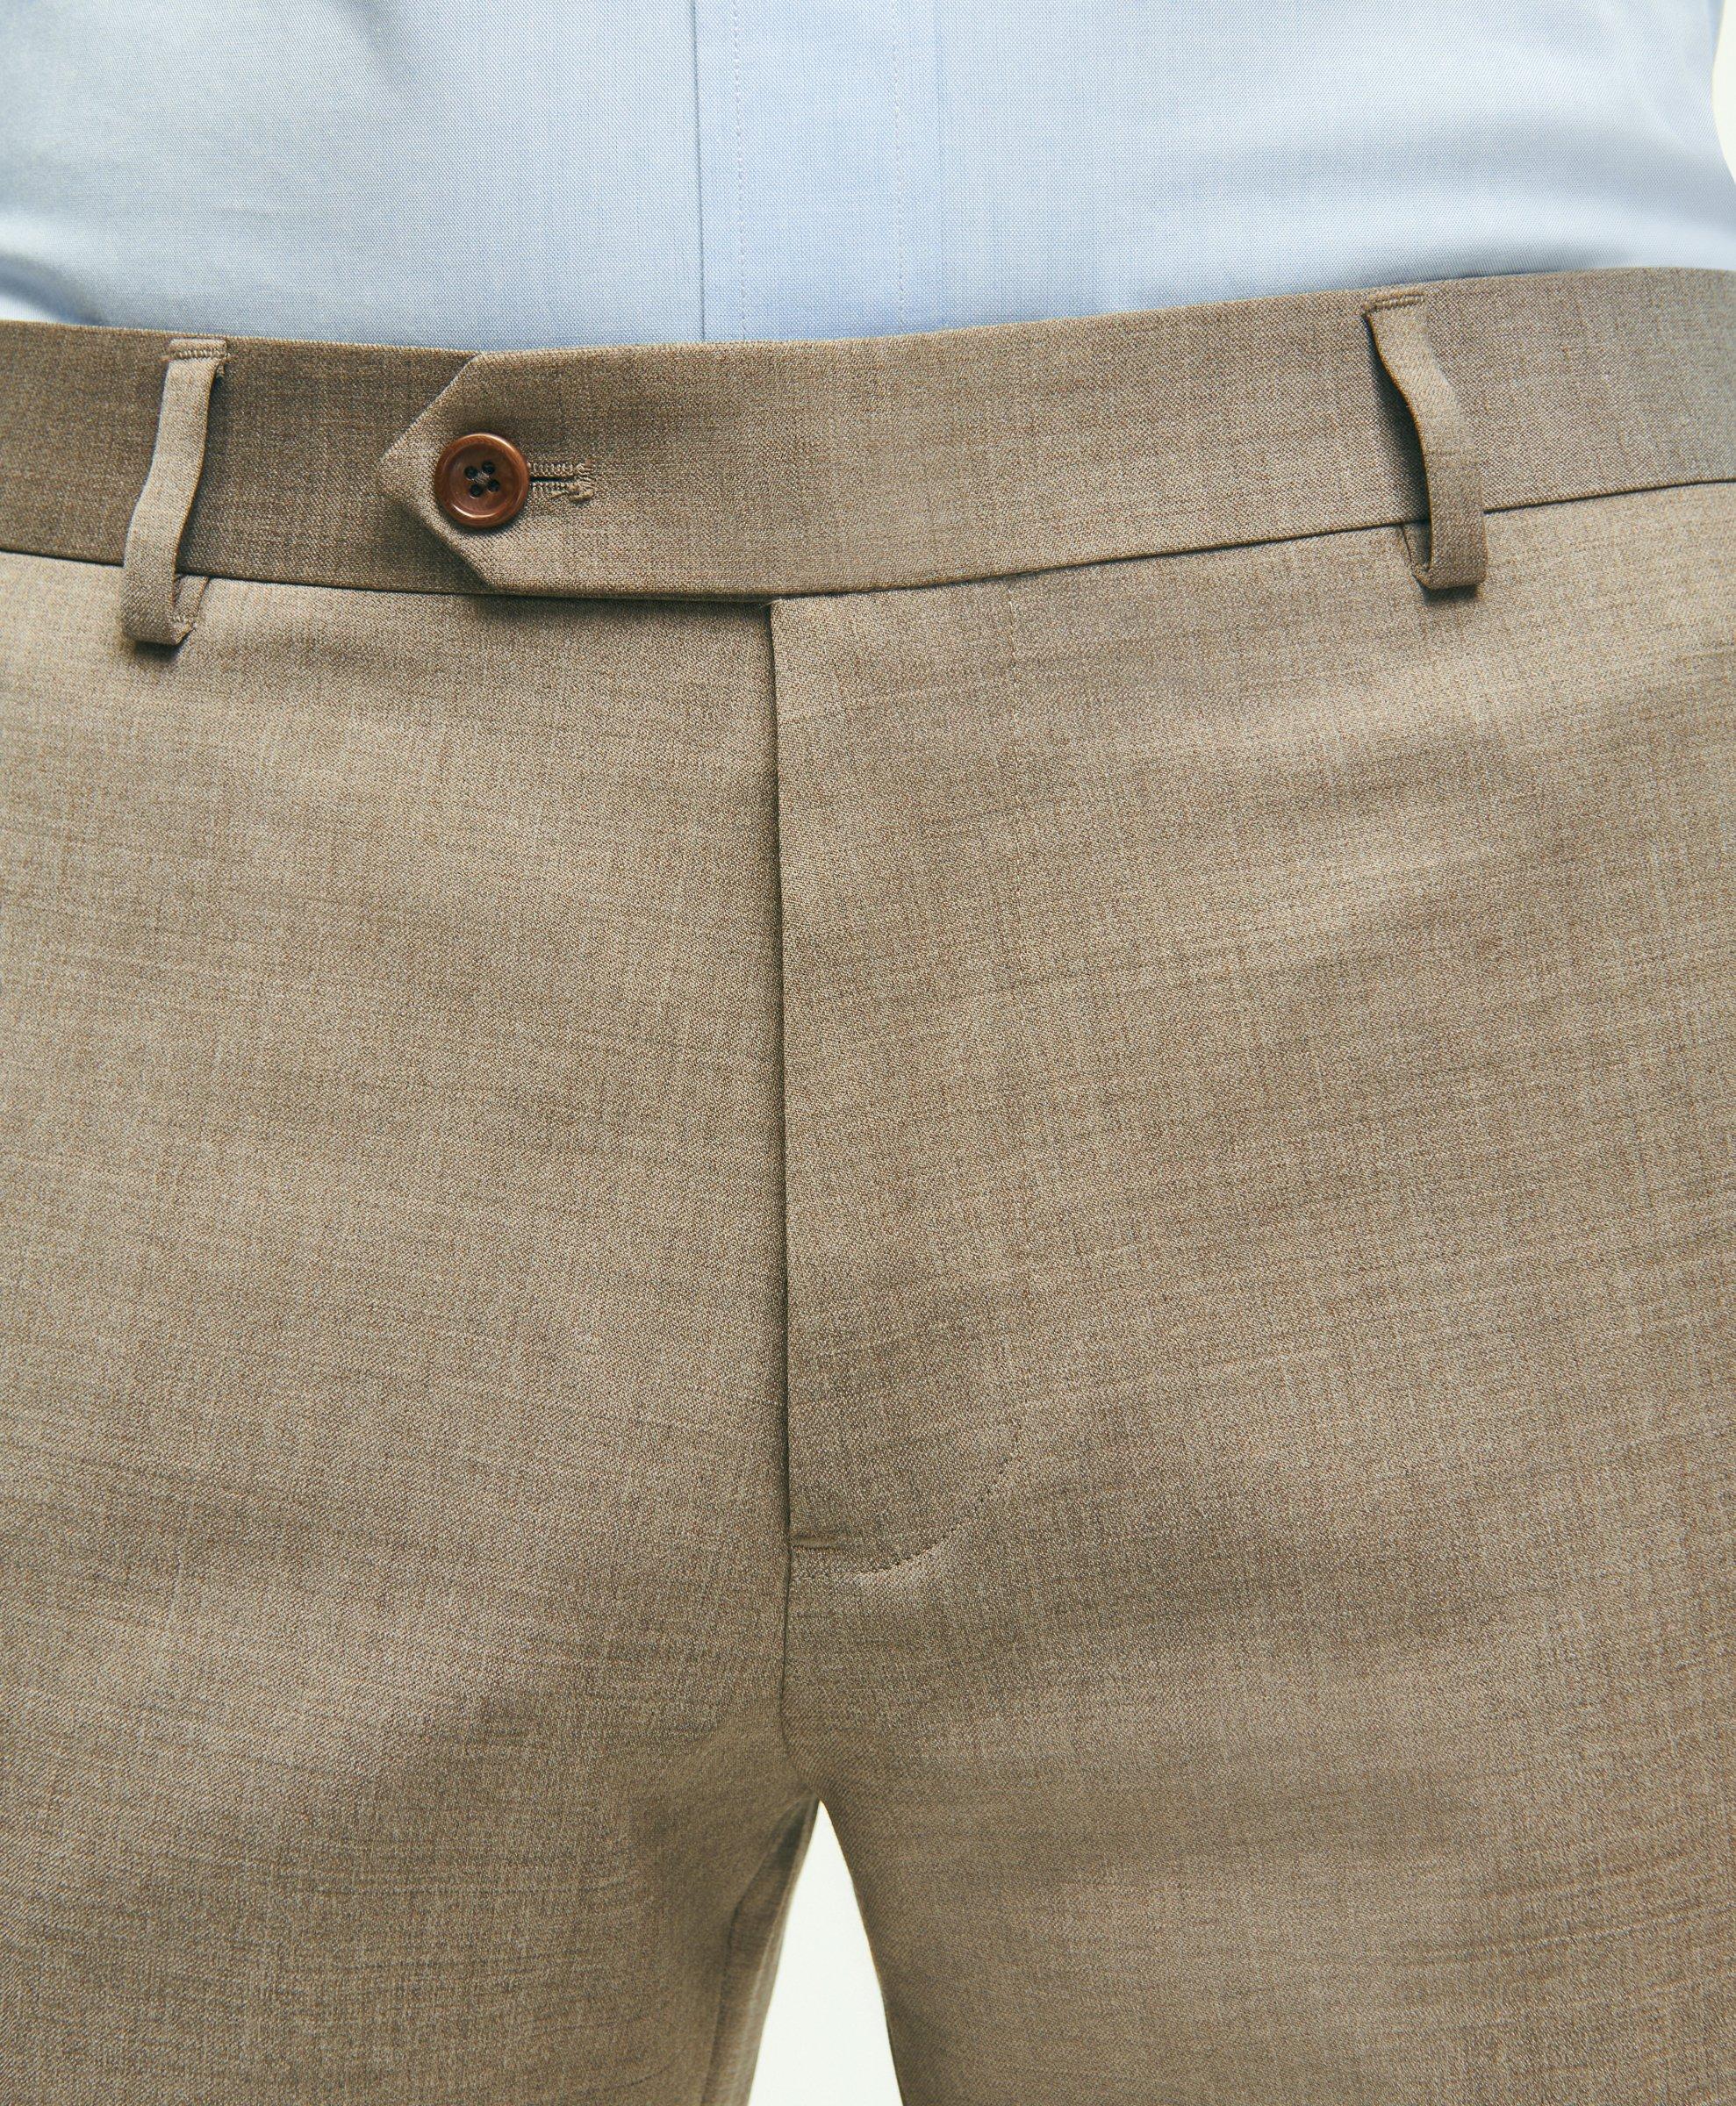 Braggi By Louis Raphael Brown Mens Dress Pants Sz 31 Waist – Swap